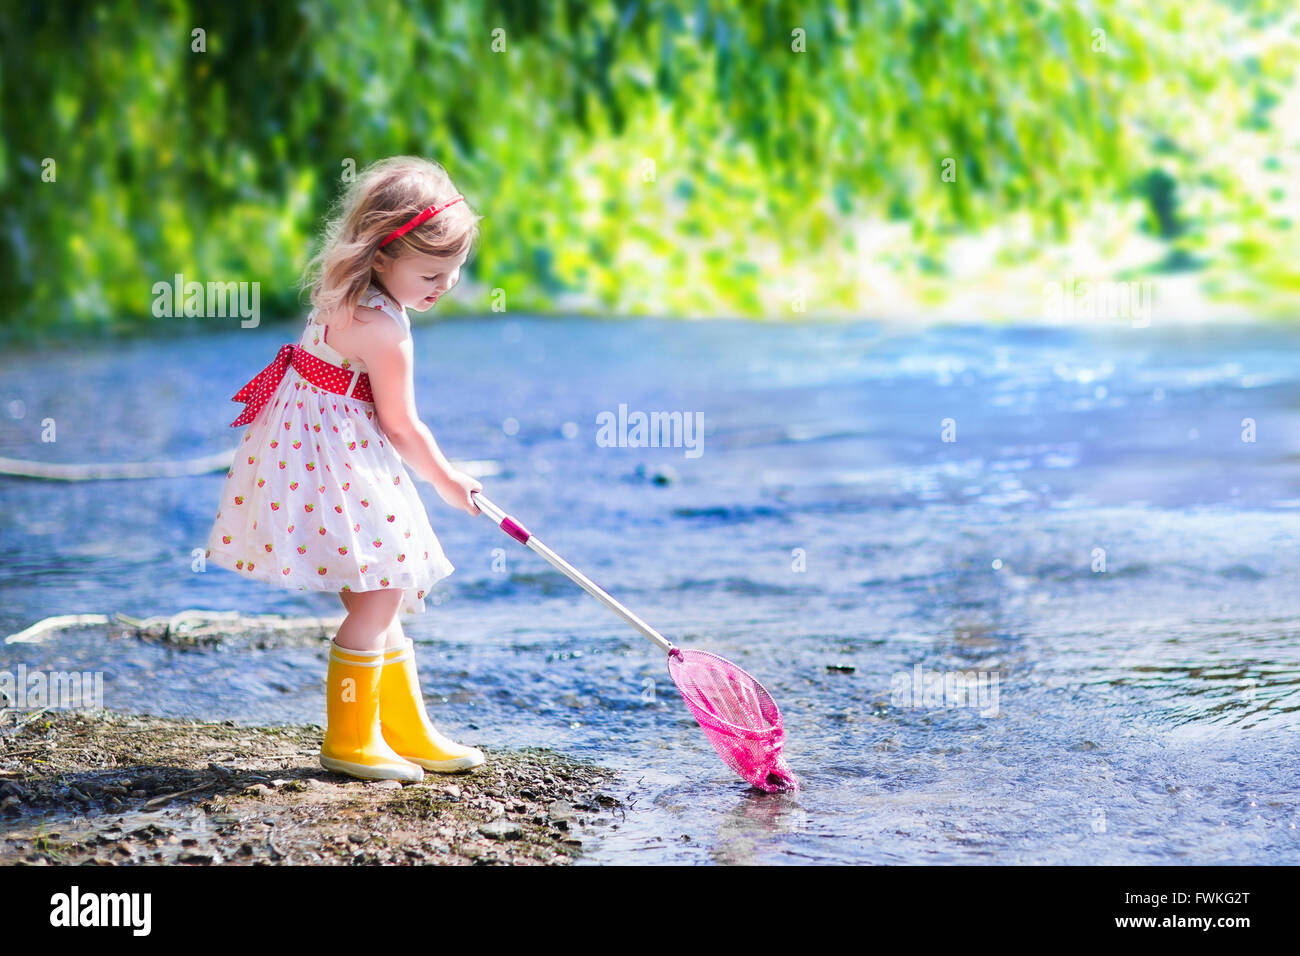 Kind spielt in einem Fluss. Niedliche kleine Mädchen in einem Sommerkleid  und Regen Stiefel fangen Fisch und Frosch mit einem bunten net stehen  Stockfotografie - Alamy